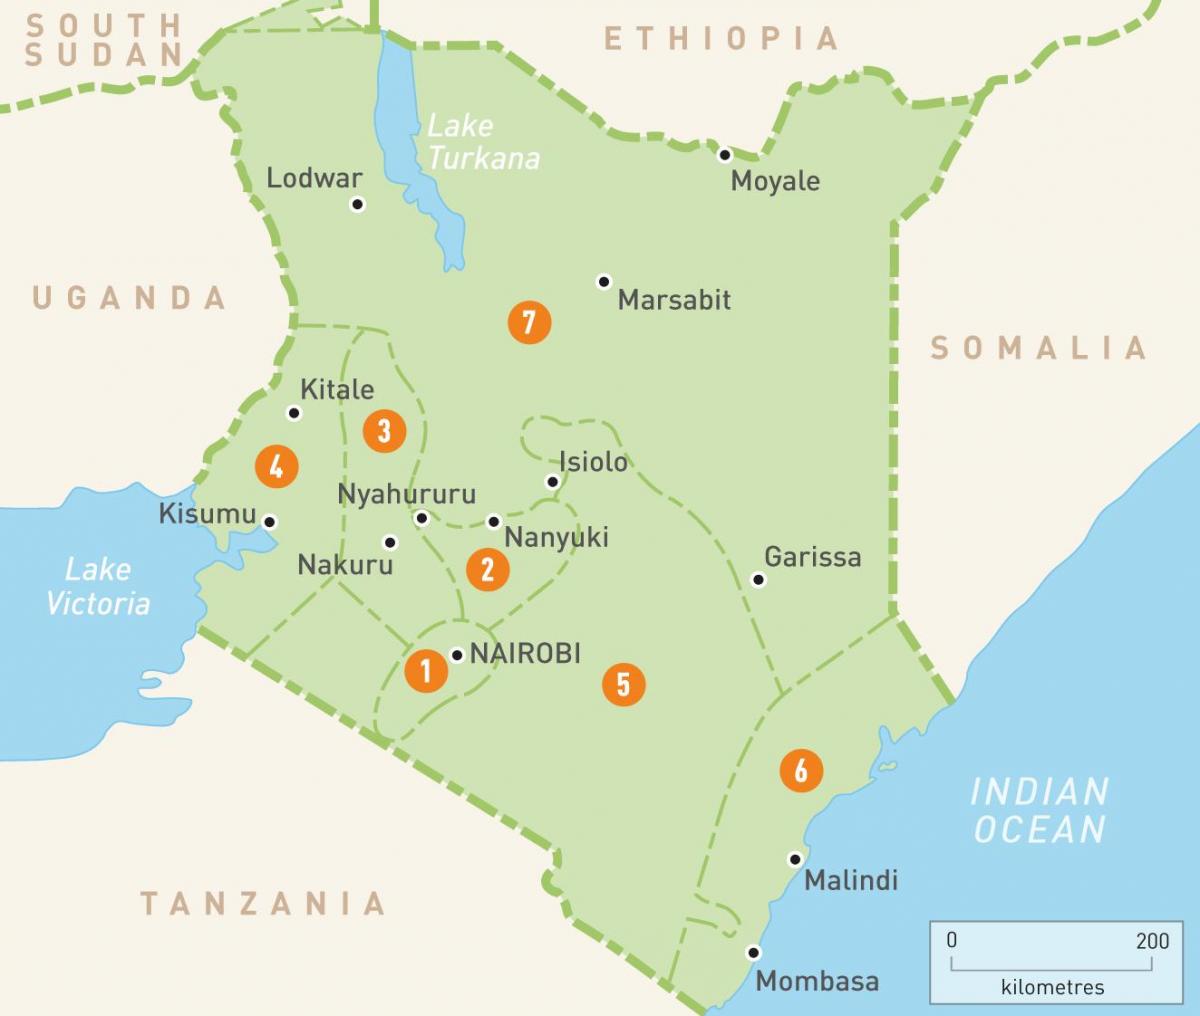 რუკა კენიაში აჩვენებს პროვინციებში